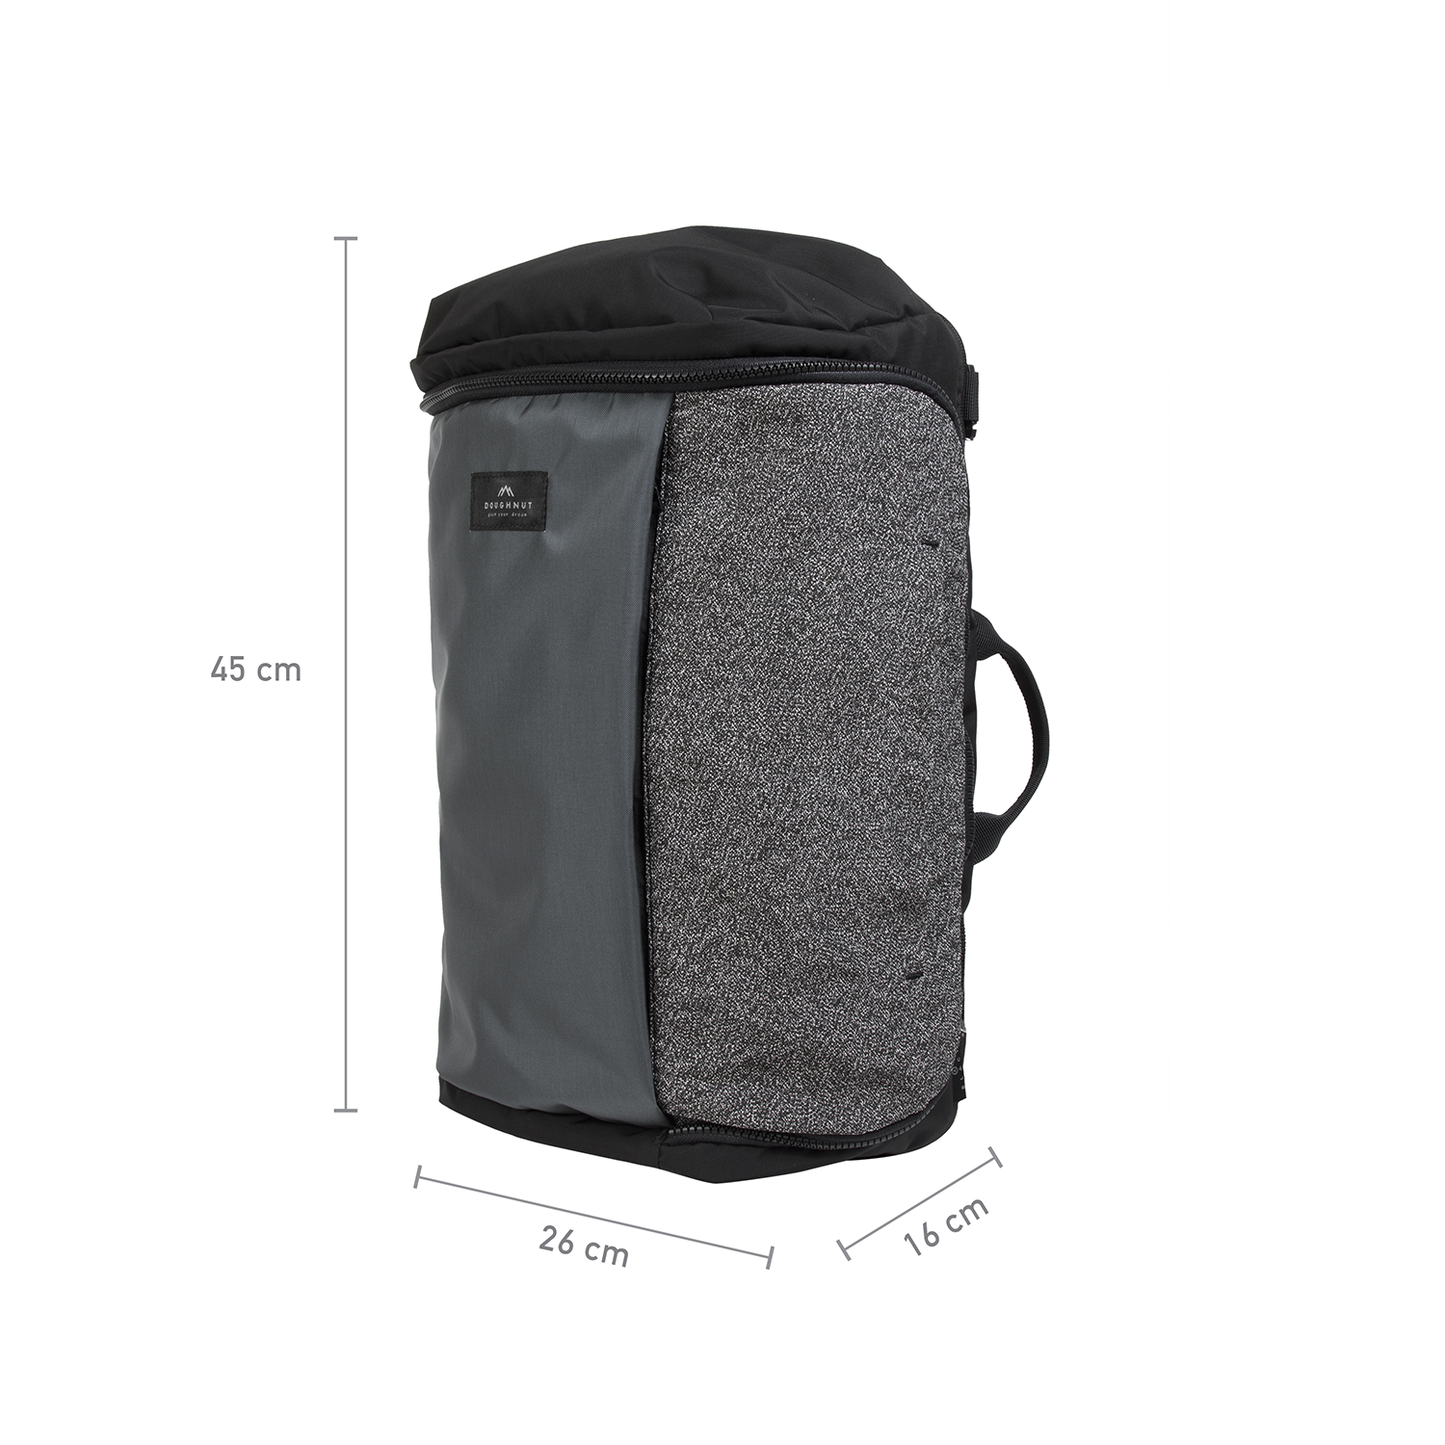 Sturdy Shield Series Black Backpack